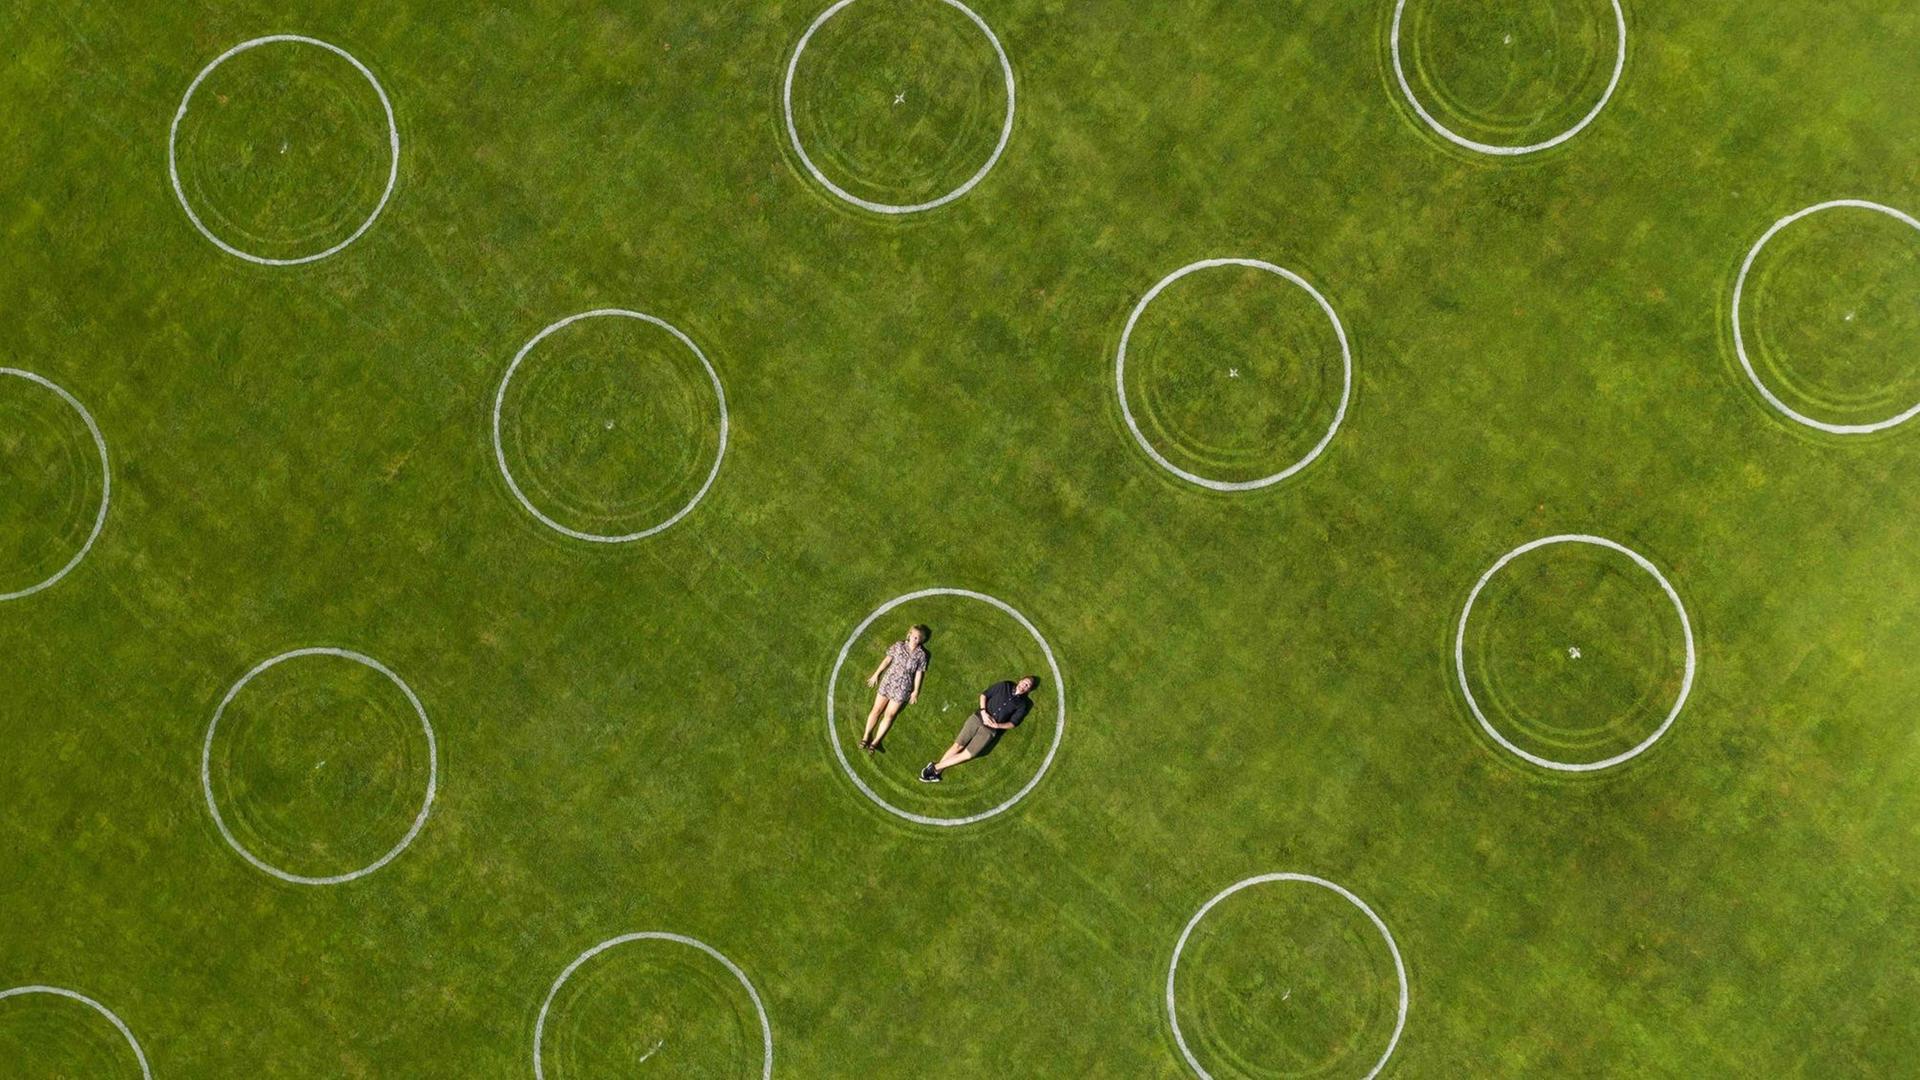 Luftaufnahme eines Stadions mit eingezeichneten Kreidekreisen für die Abstandseinhaltung bei einer Veranstaltung im Jahnstadion, Göttingen. In einem der Kreise liegt ein Paar nebeneinander.